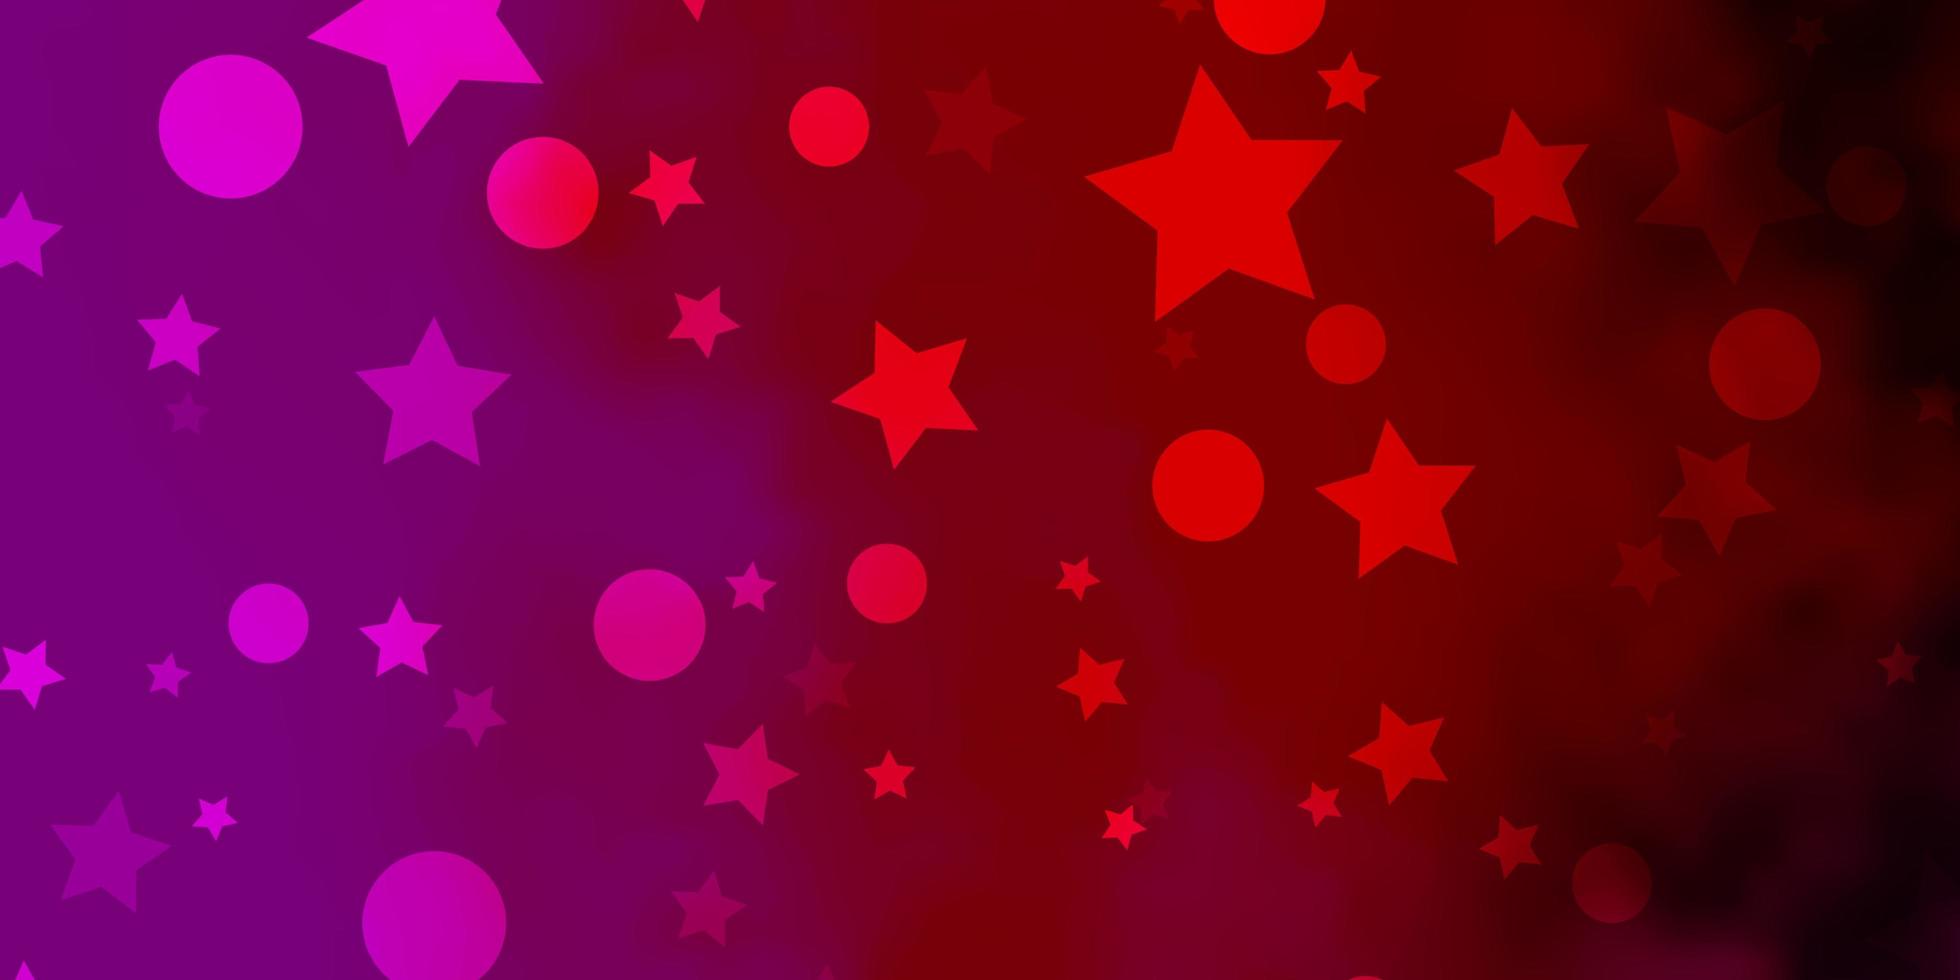 Fondo de vector de color rosa claro, amarillo con círculos, estrellas. Ilustración con un conjunto de esferas abstractas de colores, estrellas. patrón para el diseño de tela, fondos de pantalla.